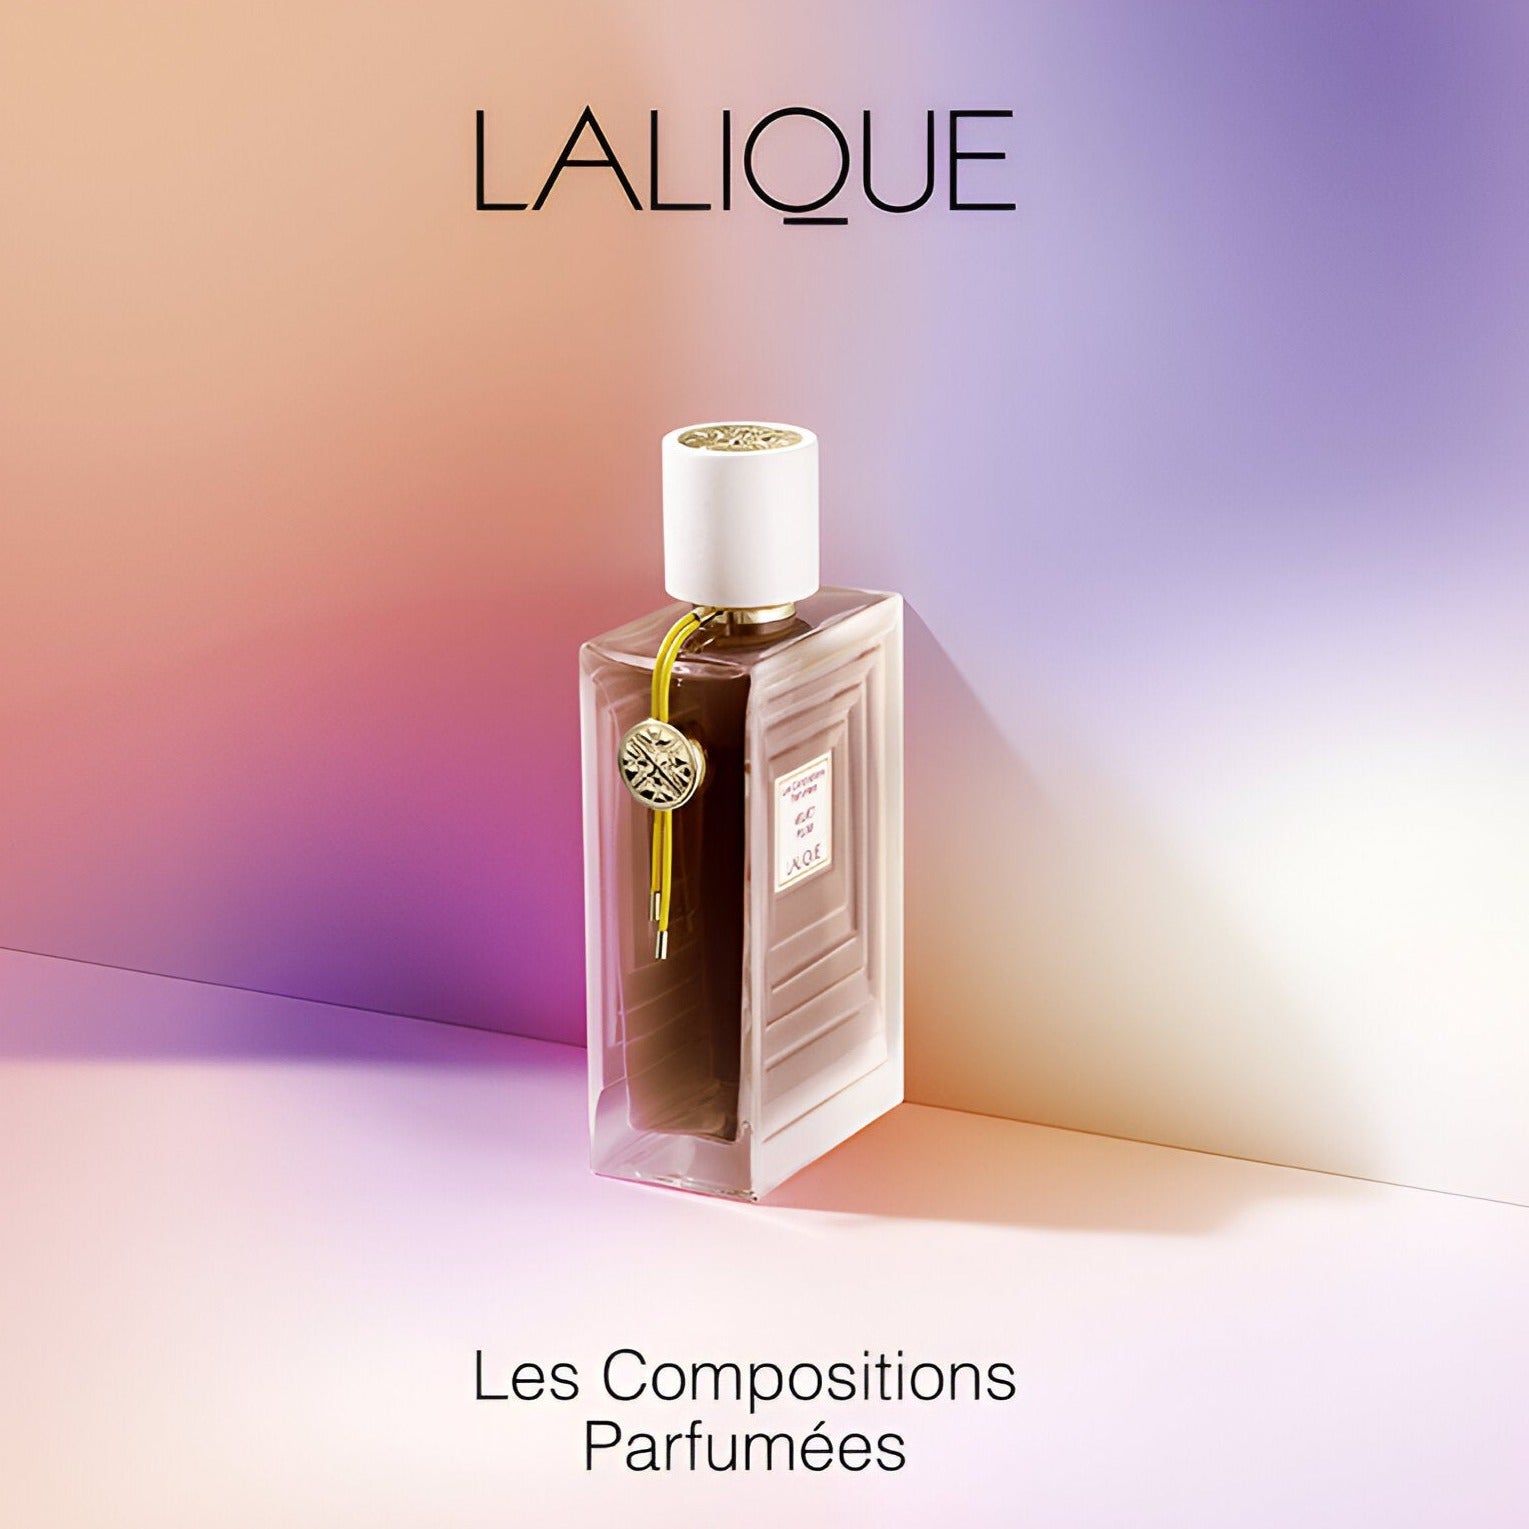 Lalique Les Compositions Parfumees Velvet Plum EDP | My Perfume Shop Australia